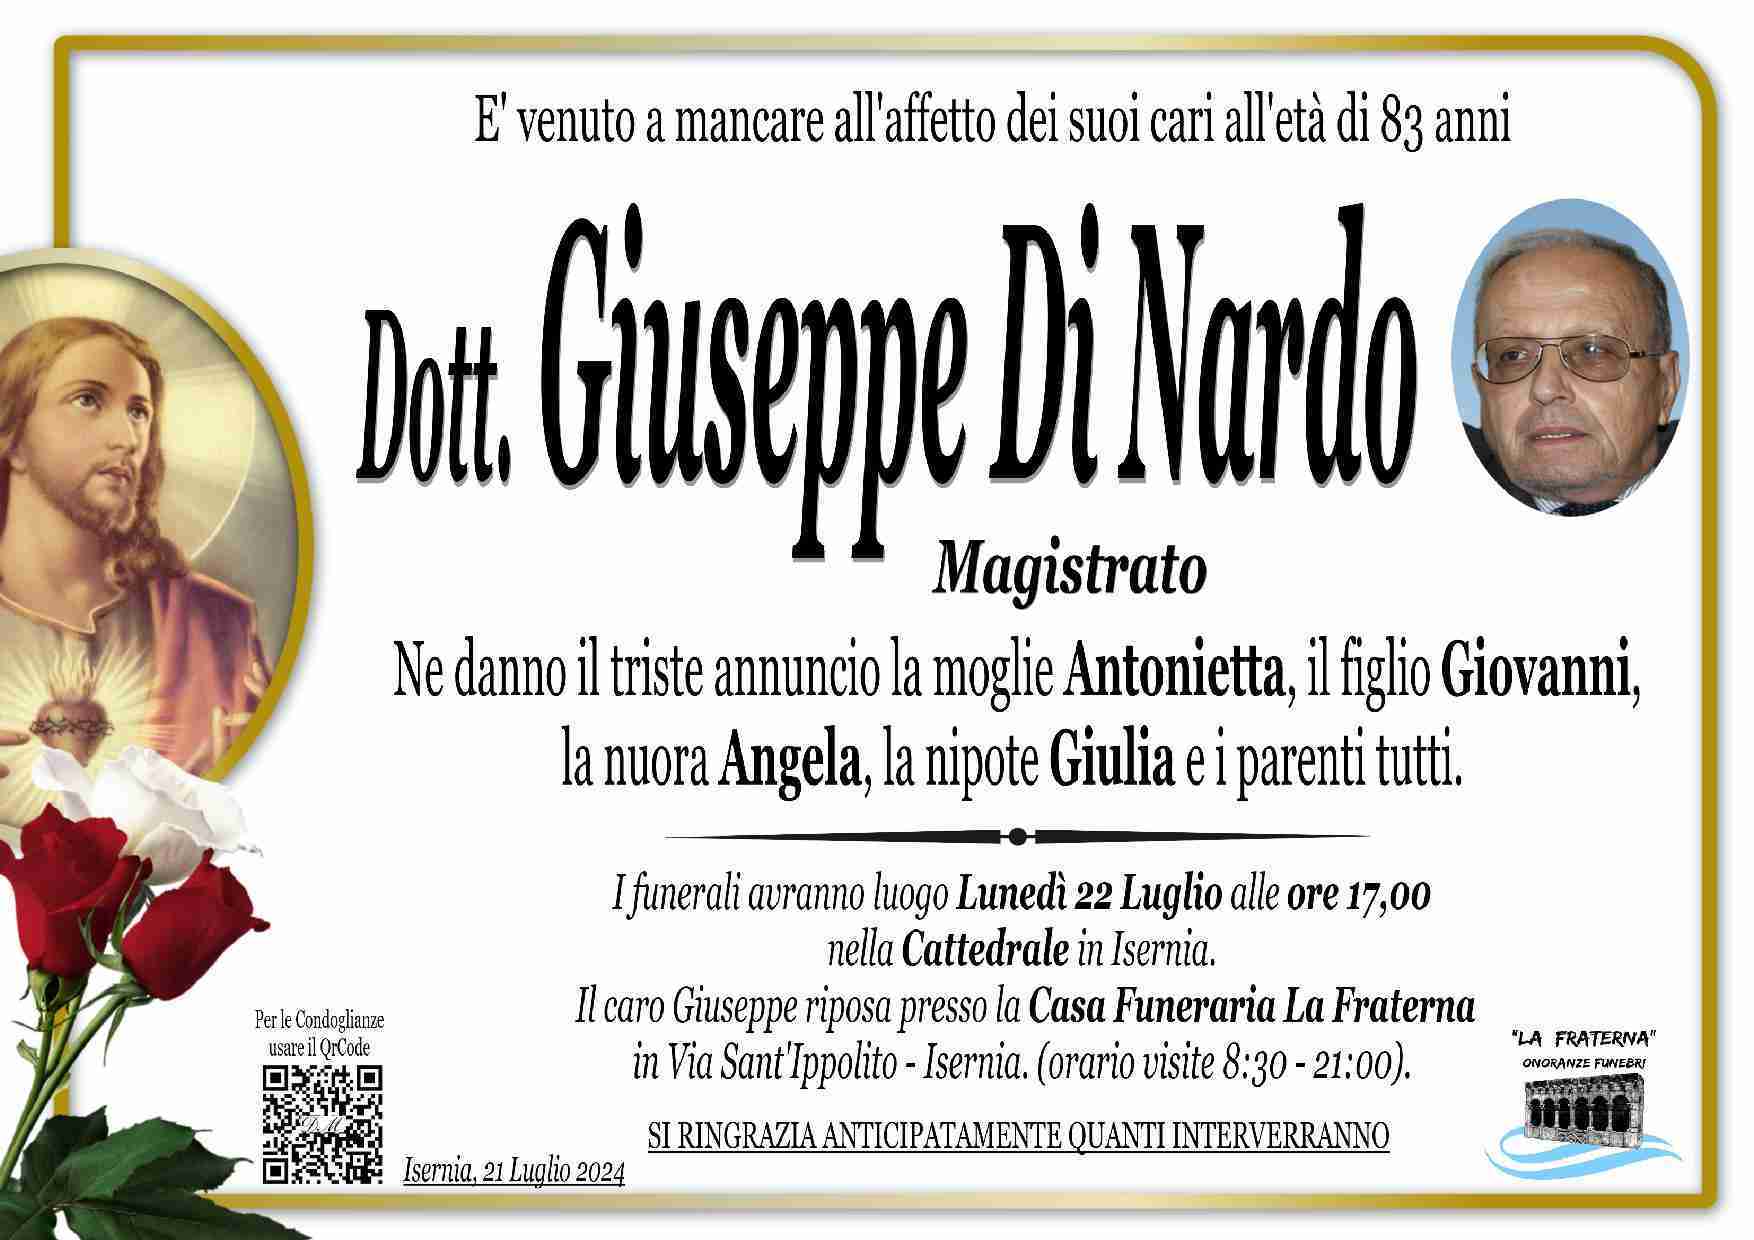 Giuseppe Di Nardo